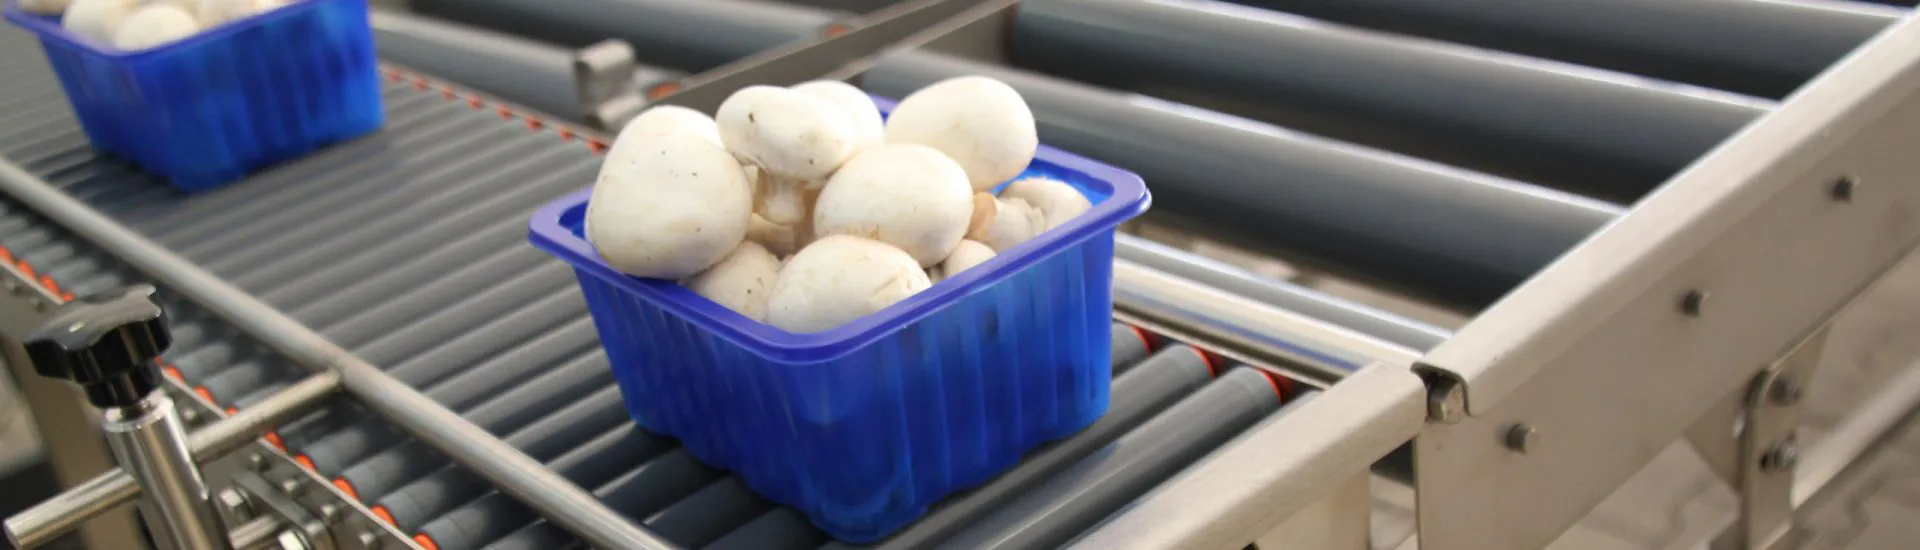 Bakje champignons op een rollenbaan